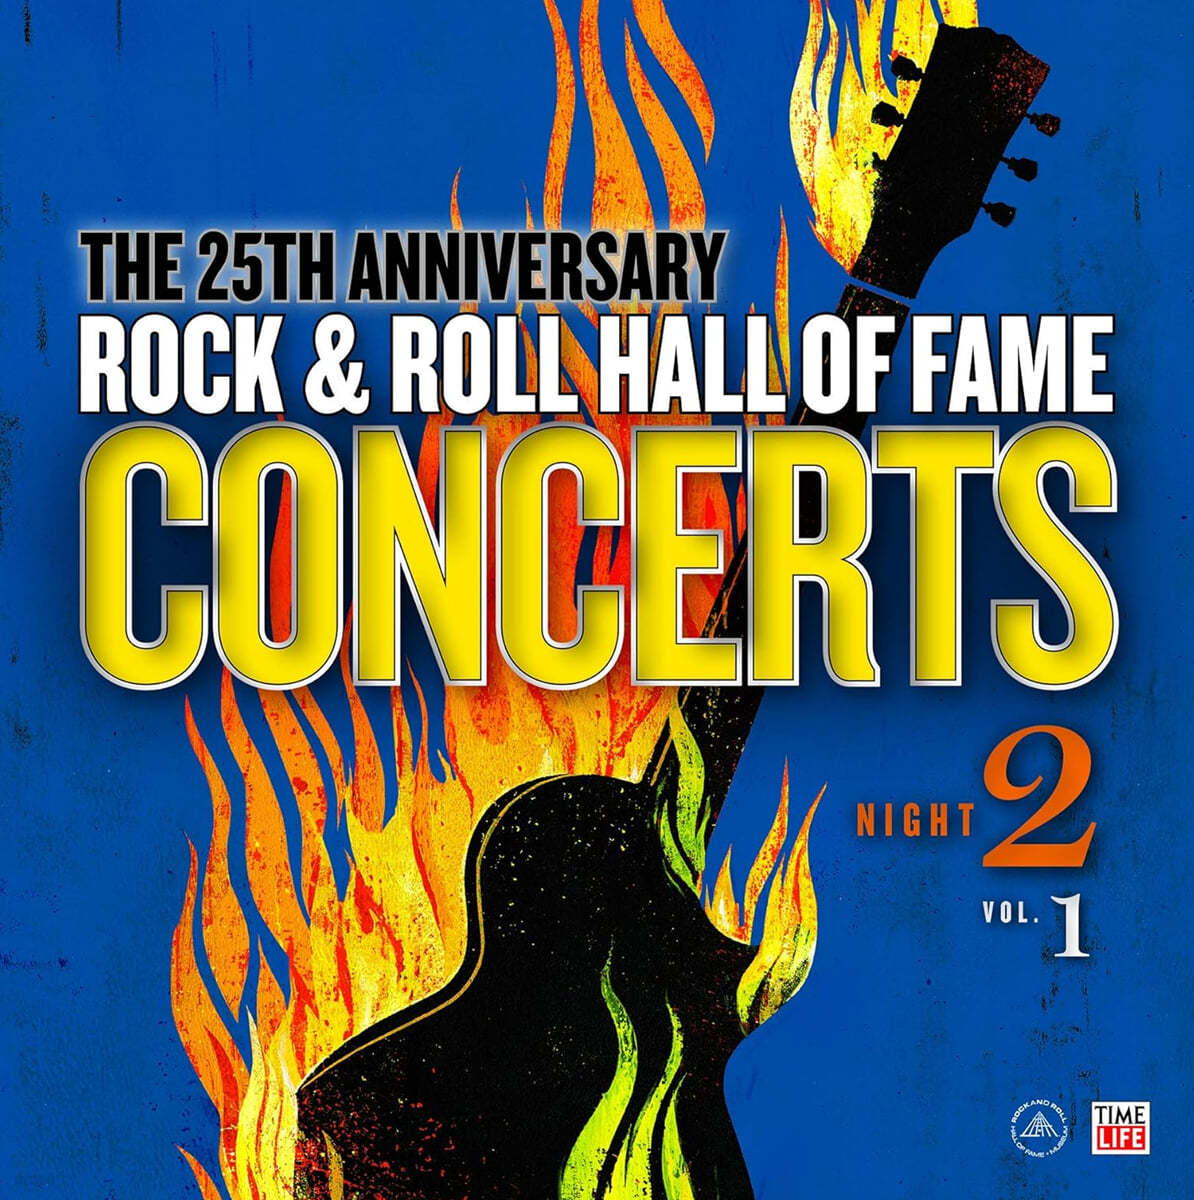 로큰롤 명예의 전당 - 콘서트 모음집 (Rock & Roll Hall of Fame: Concerts Night 2 - Vol. 1) [LP]